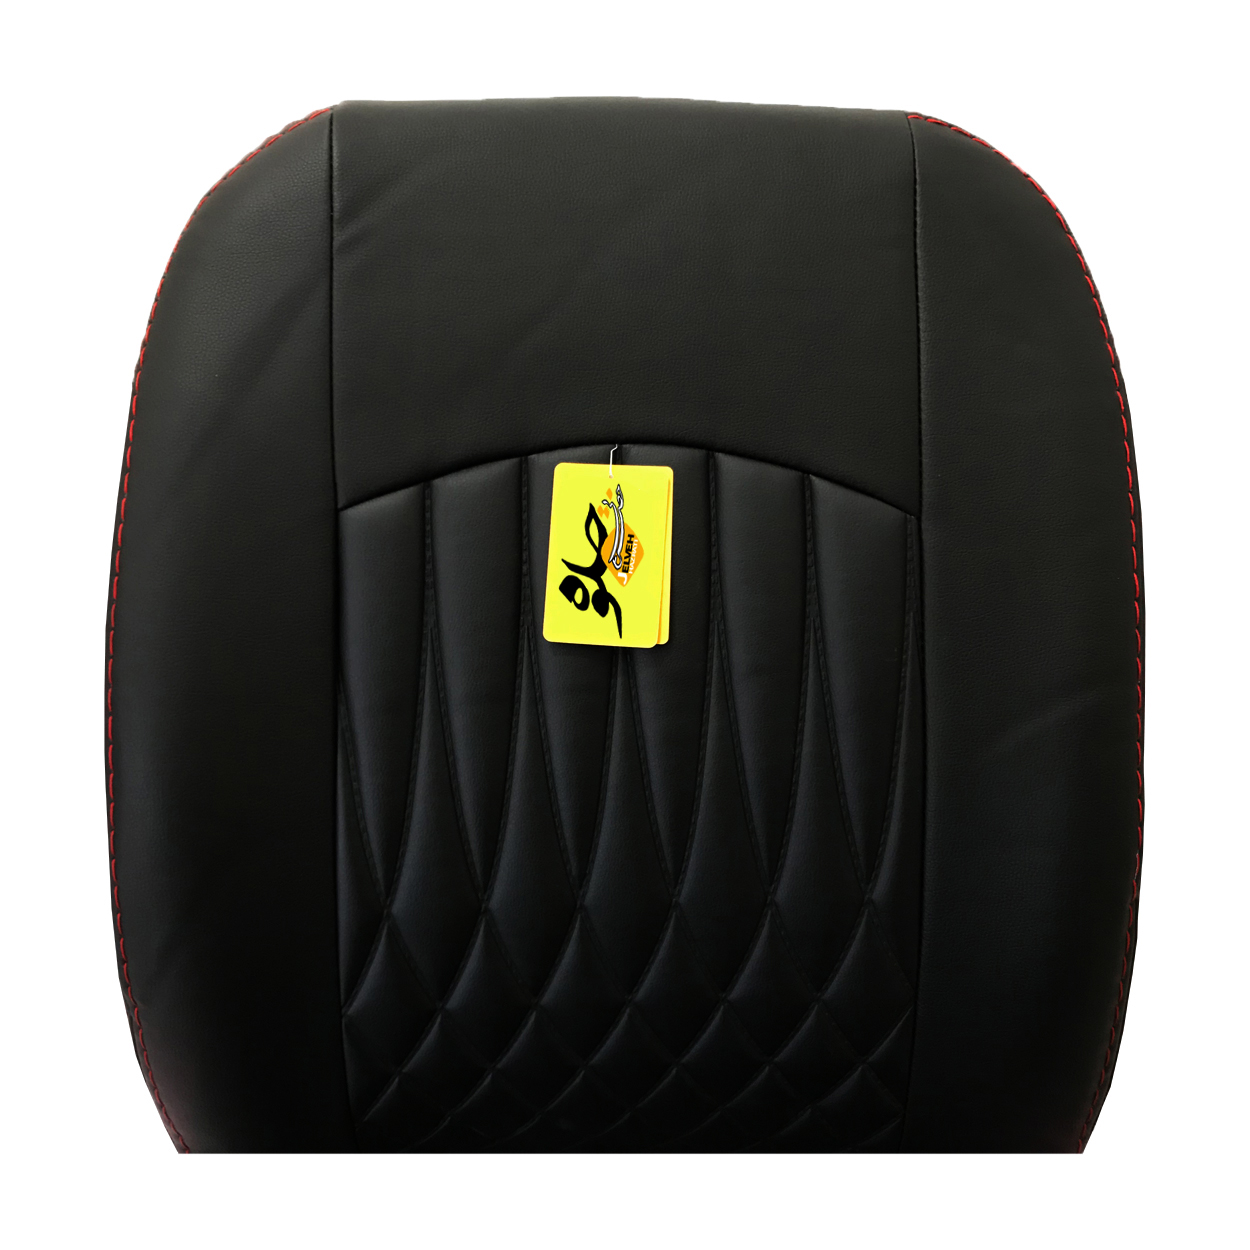 روکش صندلی خودرو جلوه مدل BG12 مناسب برای رنو مگان